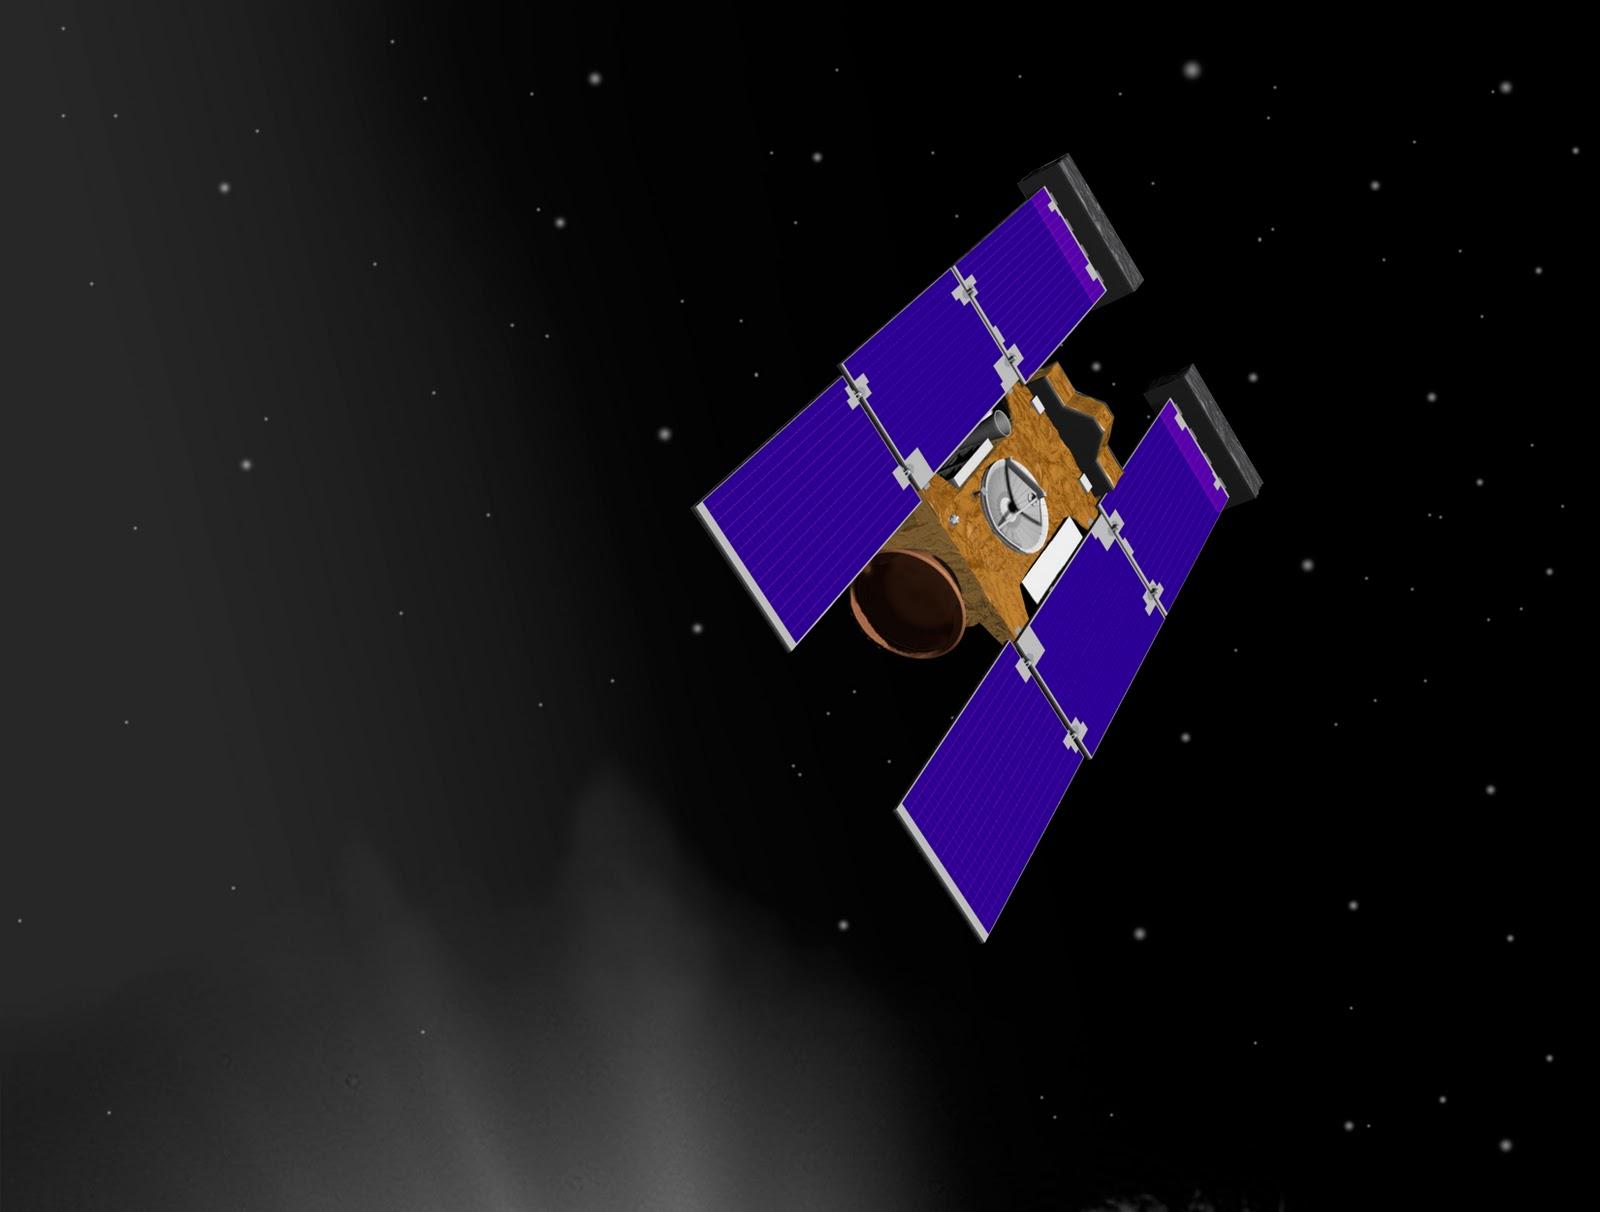 Stardust-NExT se prepara para su segundo encuentro con en cometa Tempel 1